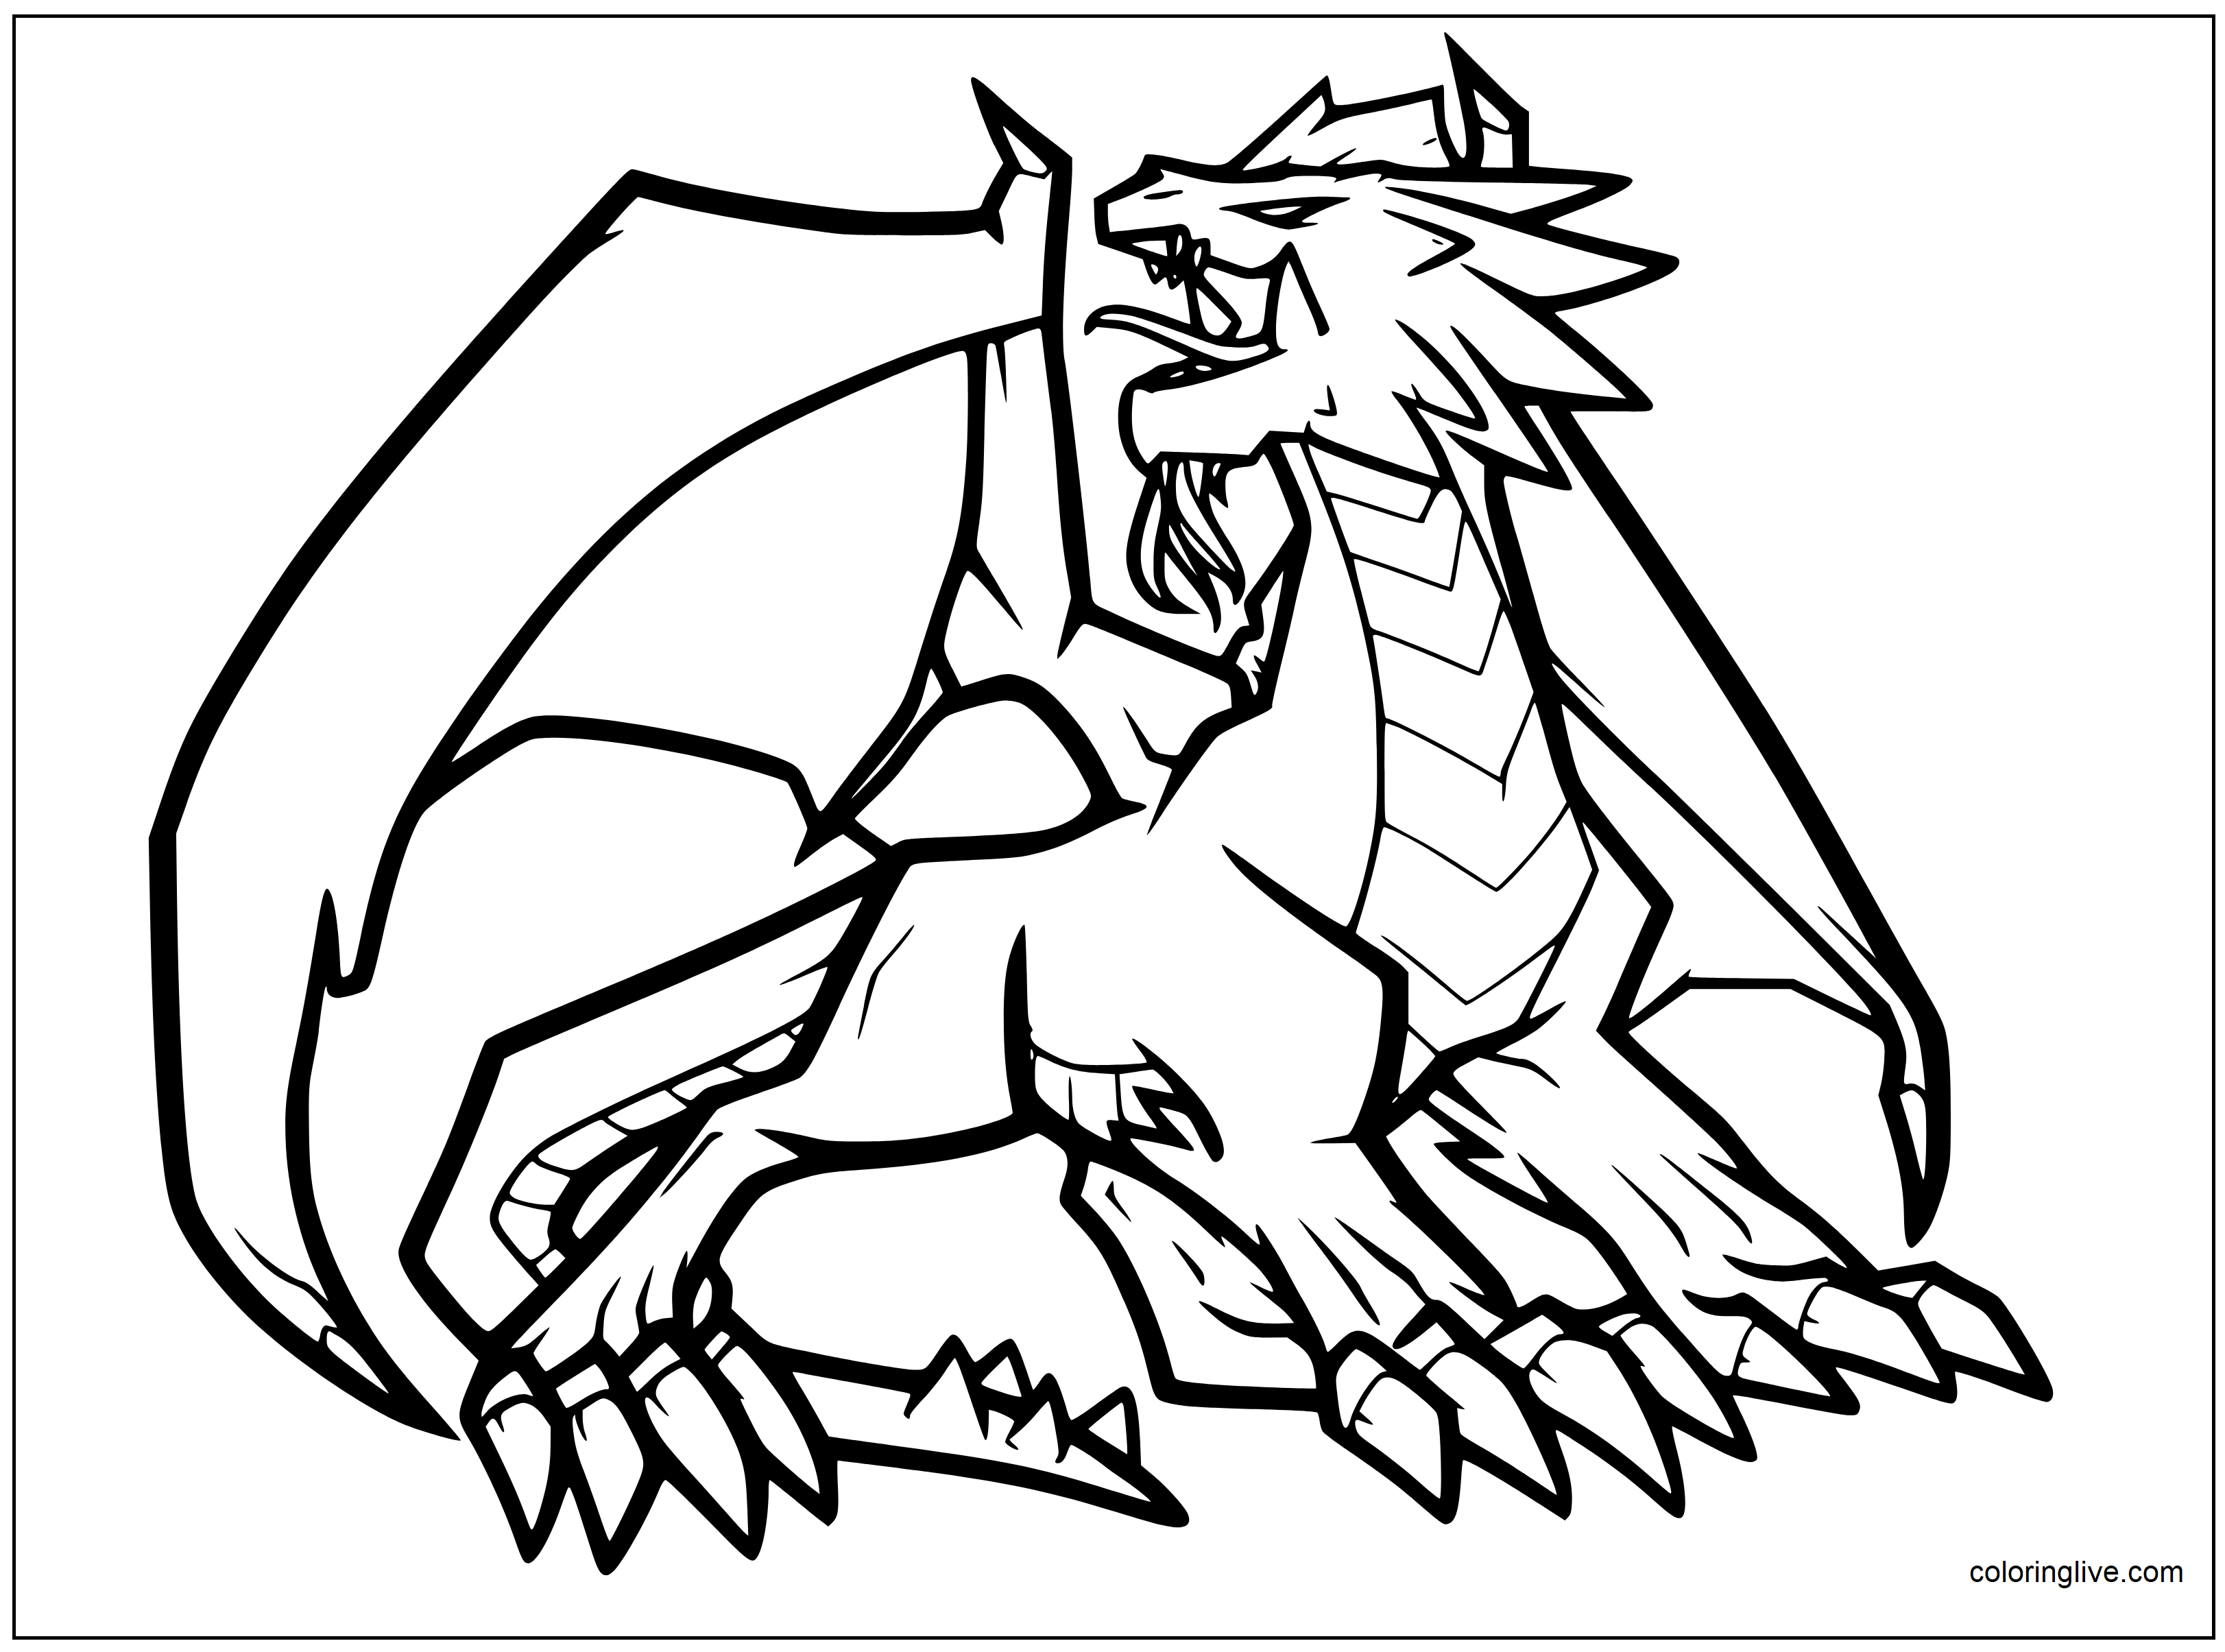 Printable Angry dragon Coloring Page for kids.